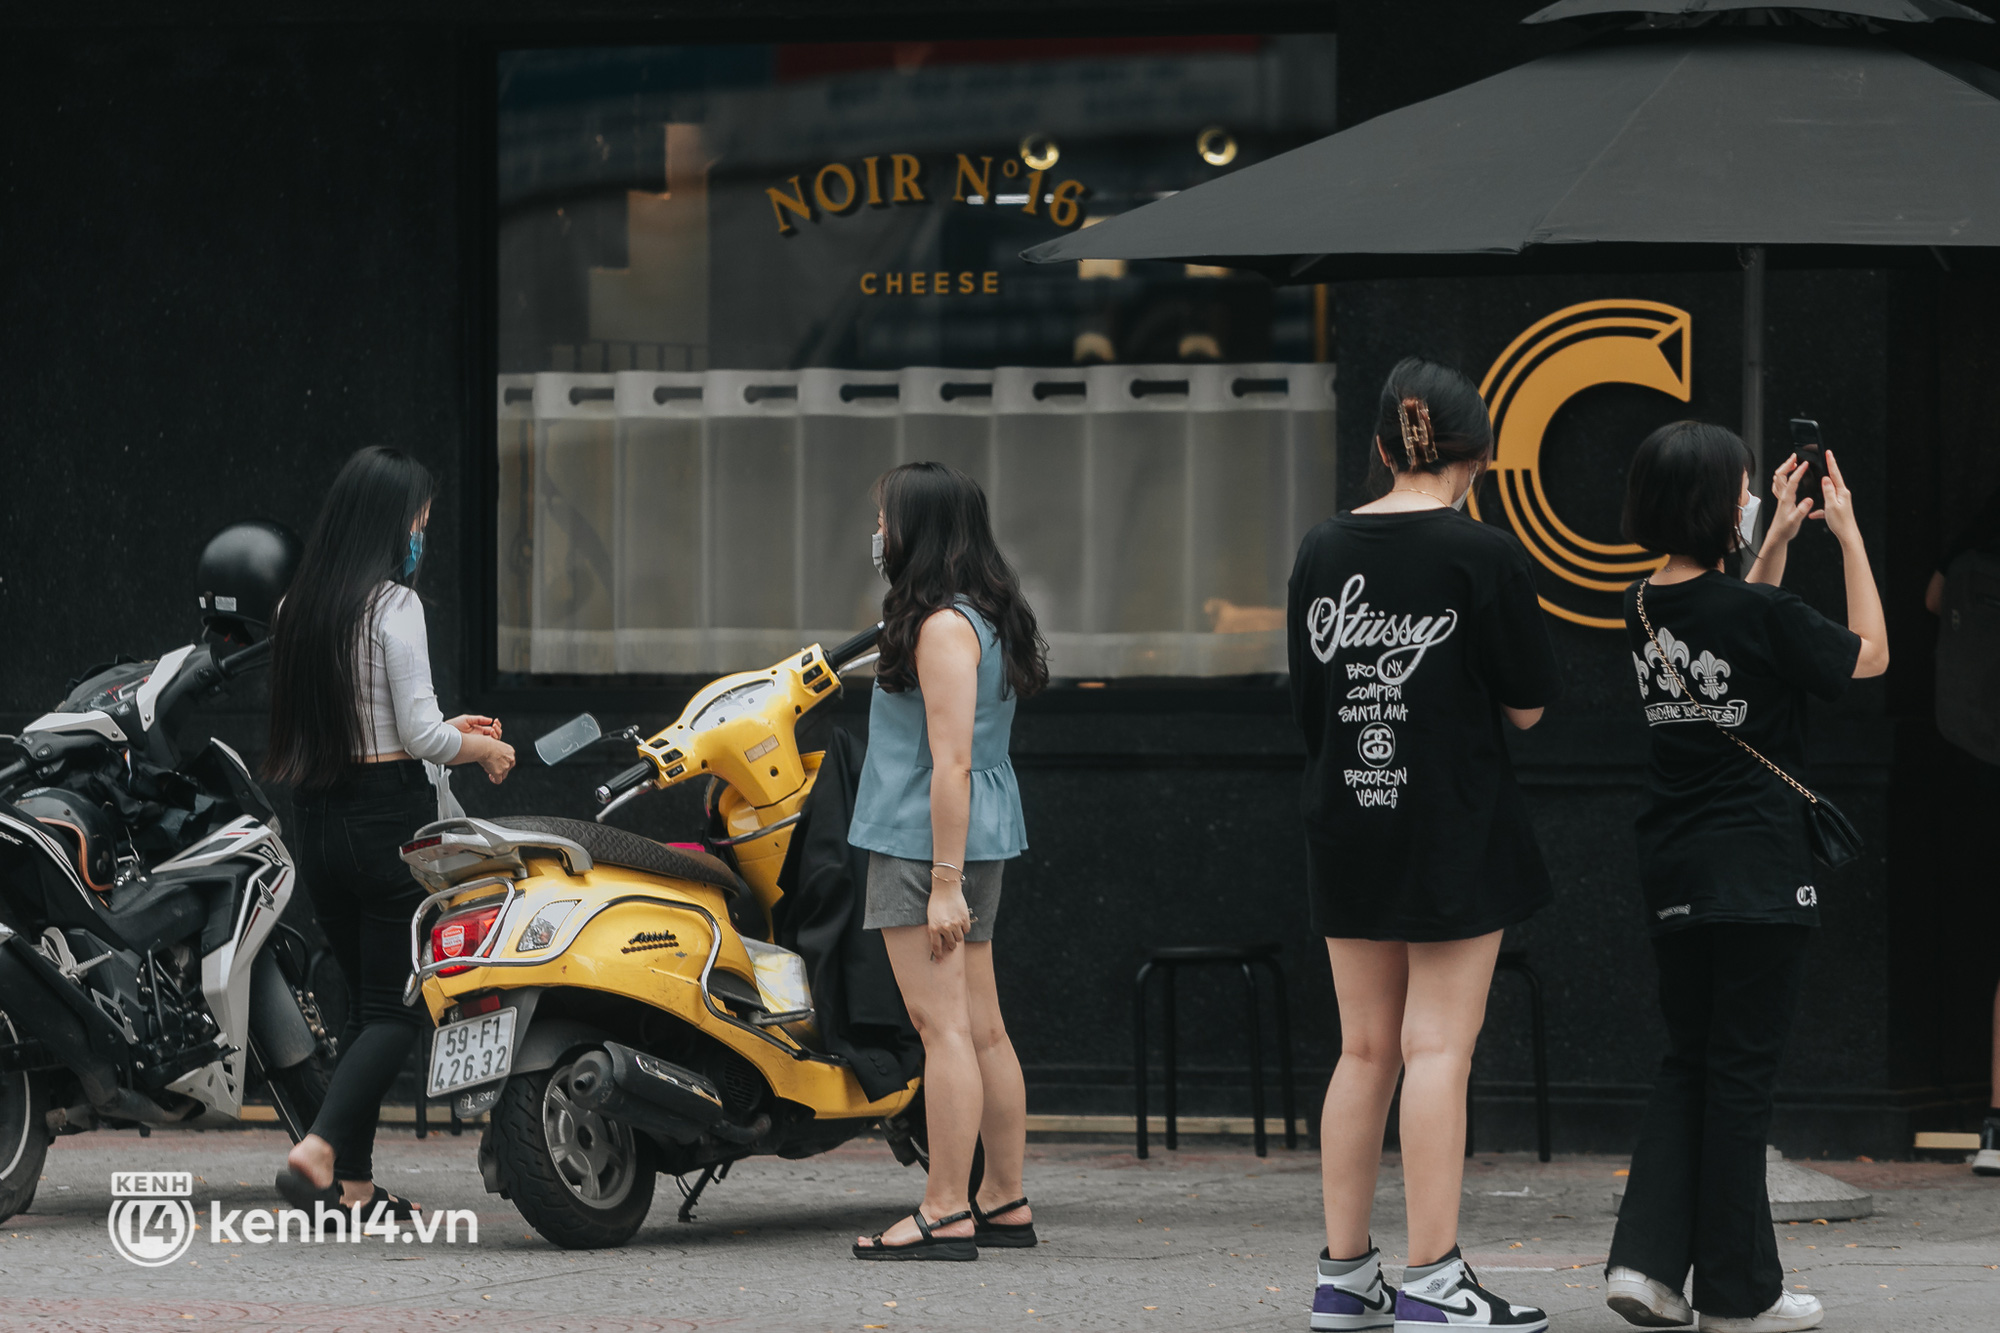 Giữa mùa dịch, một hãng cà phê đình đám mở tới 2 chi nhánh mới ở Sài Gòn: Giới trẻ đang kéo nhau check-in rần rần! - Ảnh 19.